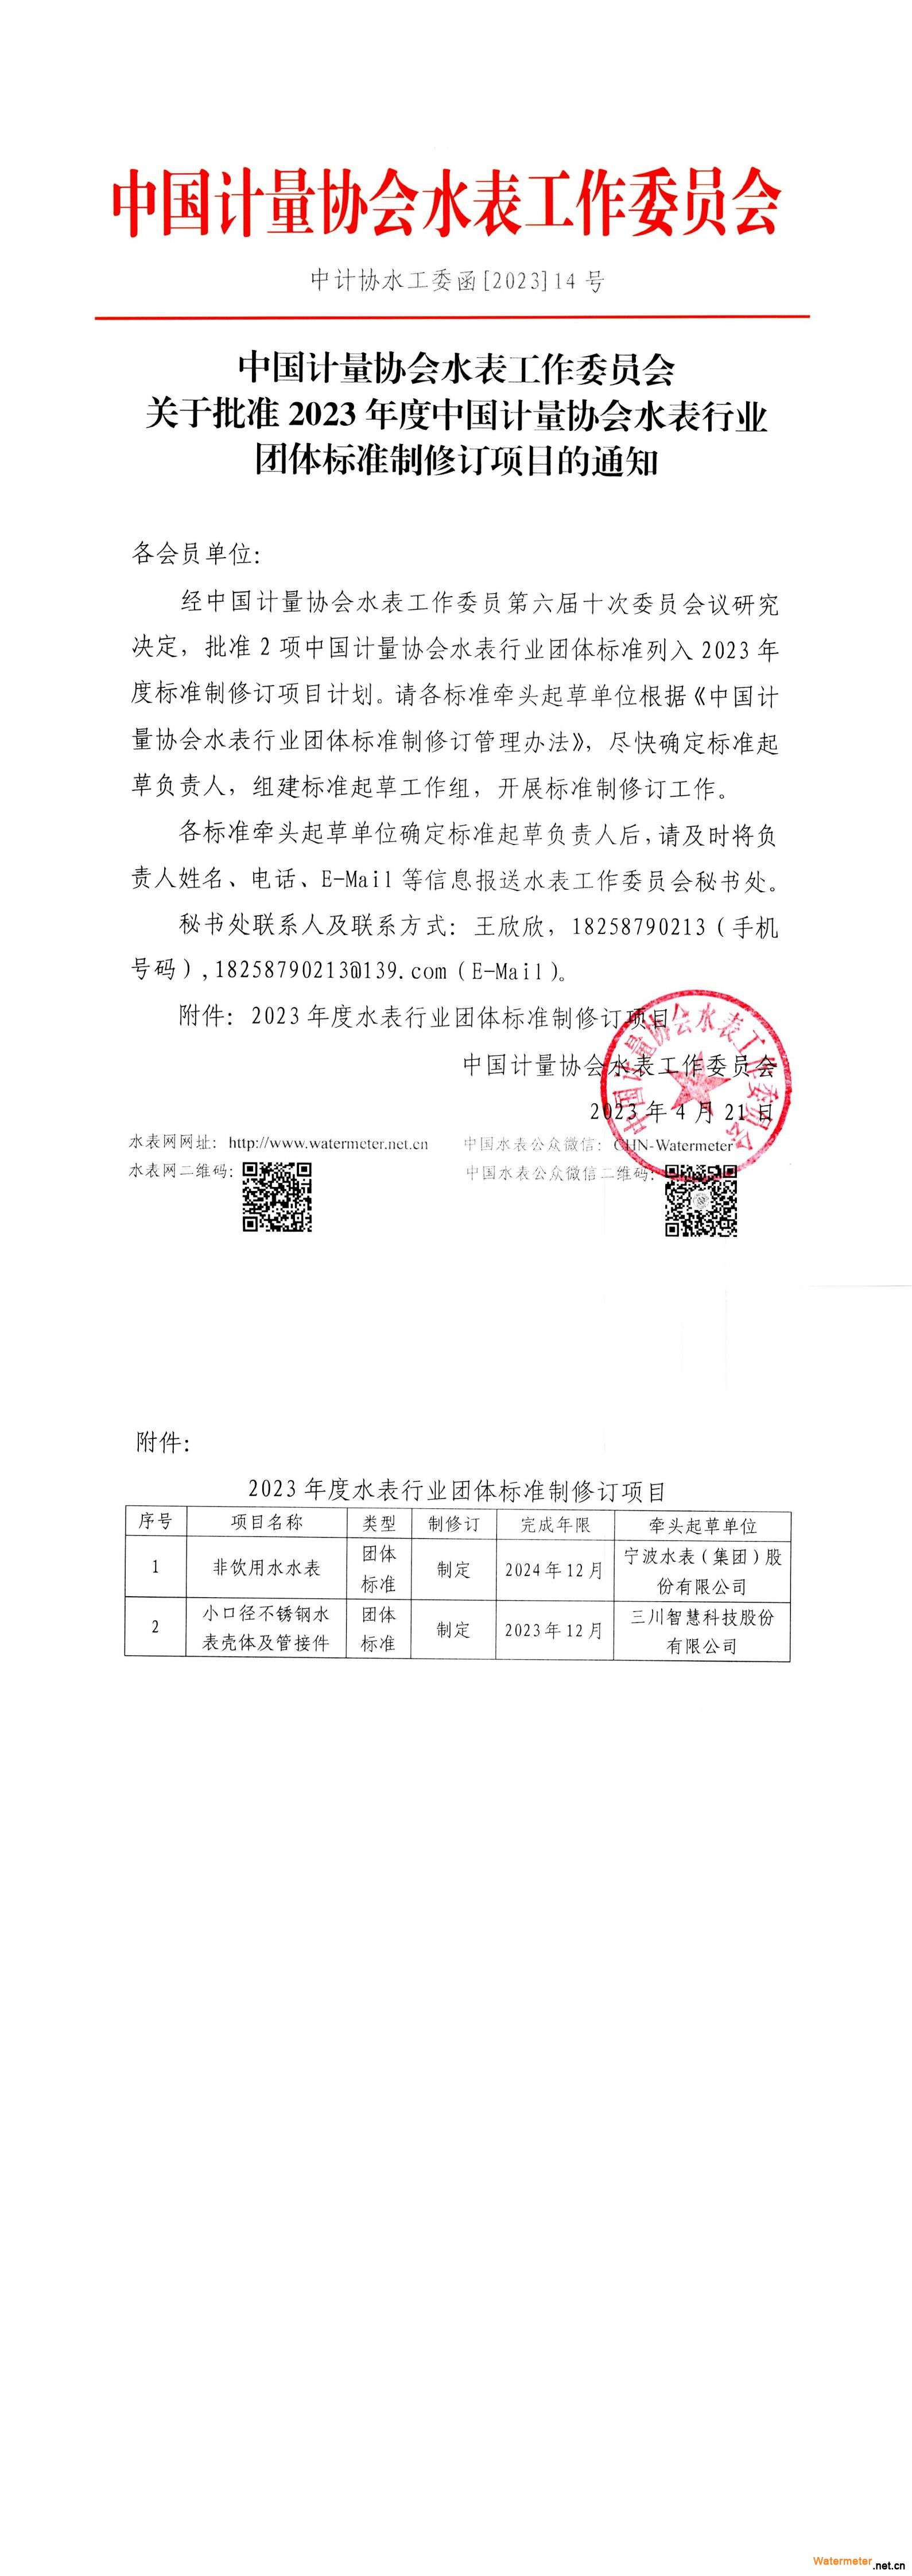 14号关于批准中国计量协会2023年度水表行业团体标准制修订项目的通知_00(1)